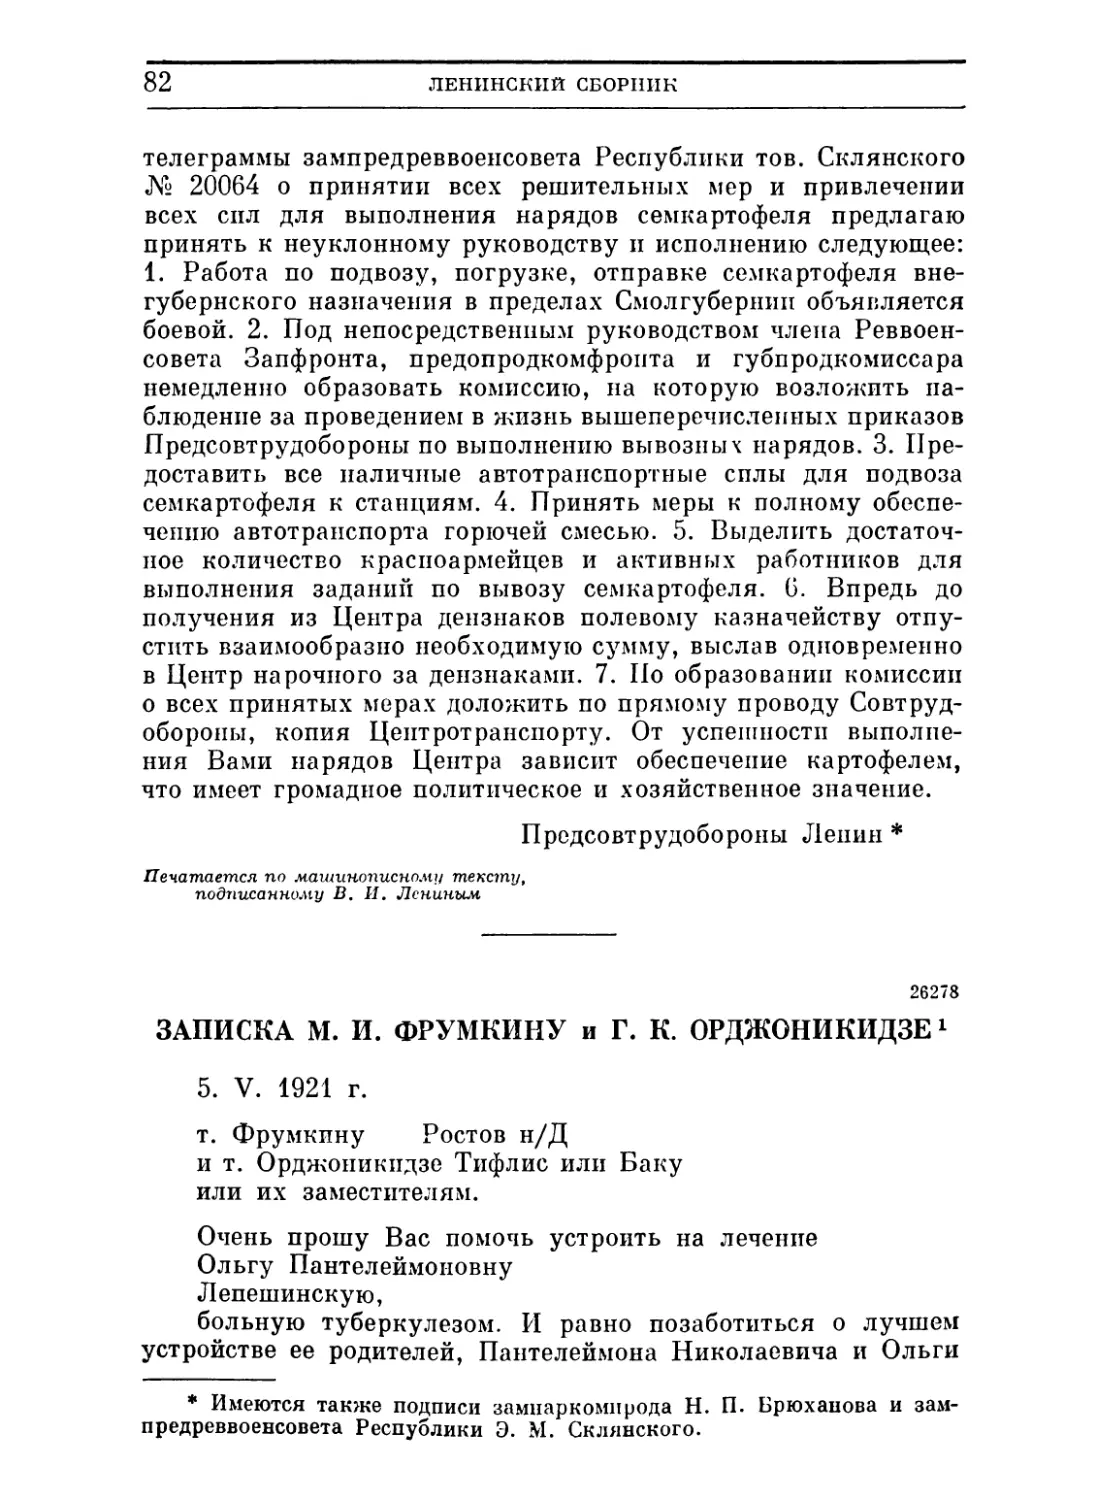 Записка М. И. Фрумкину и Г. К. Орджоникидзе. 5 мая 1921